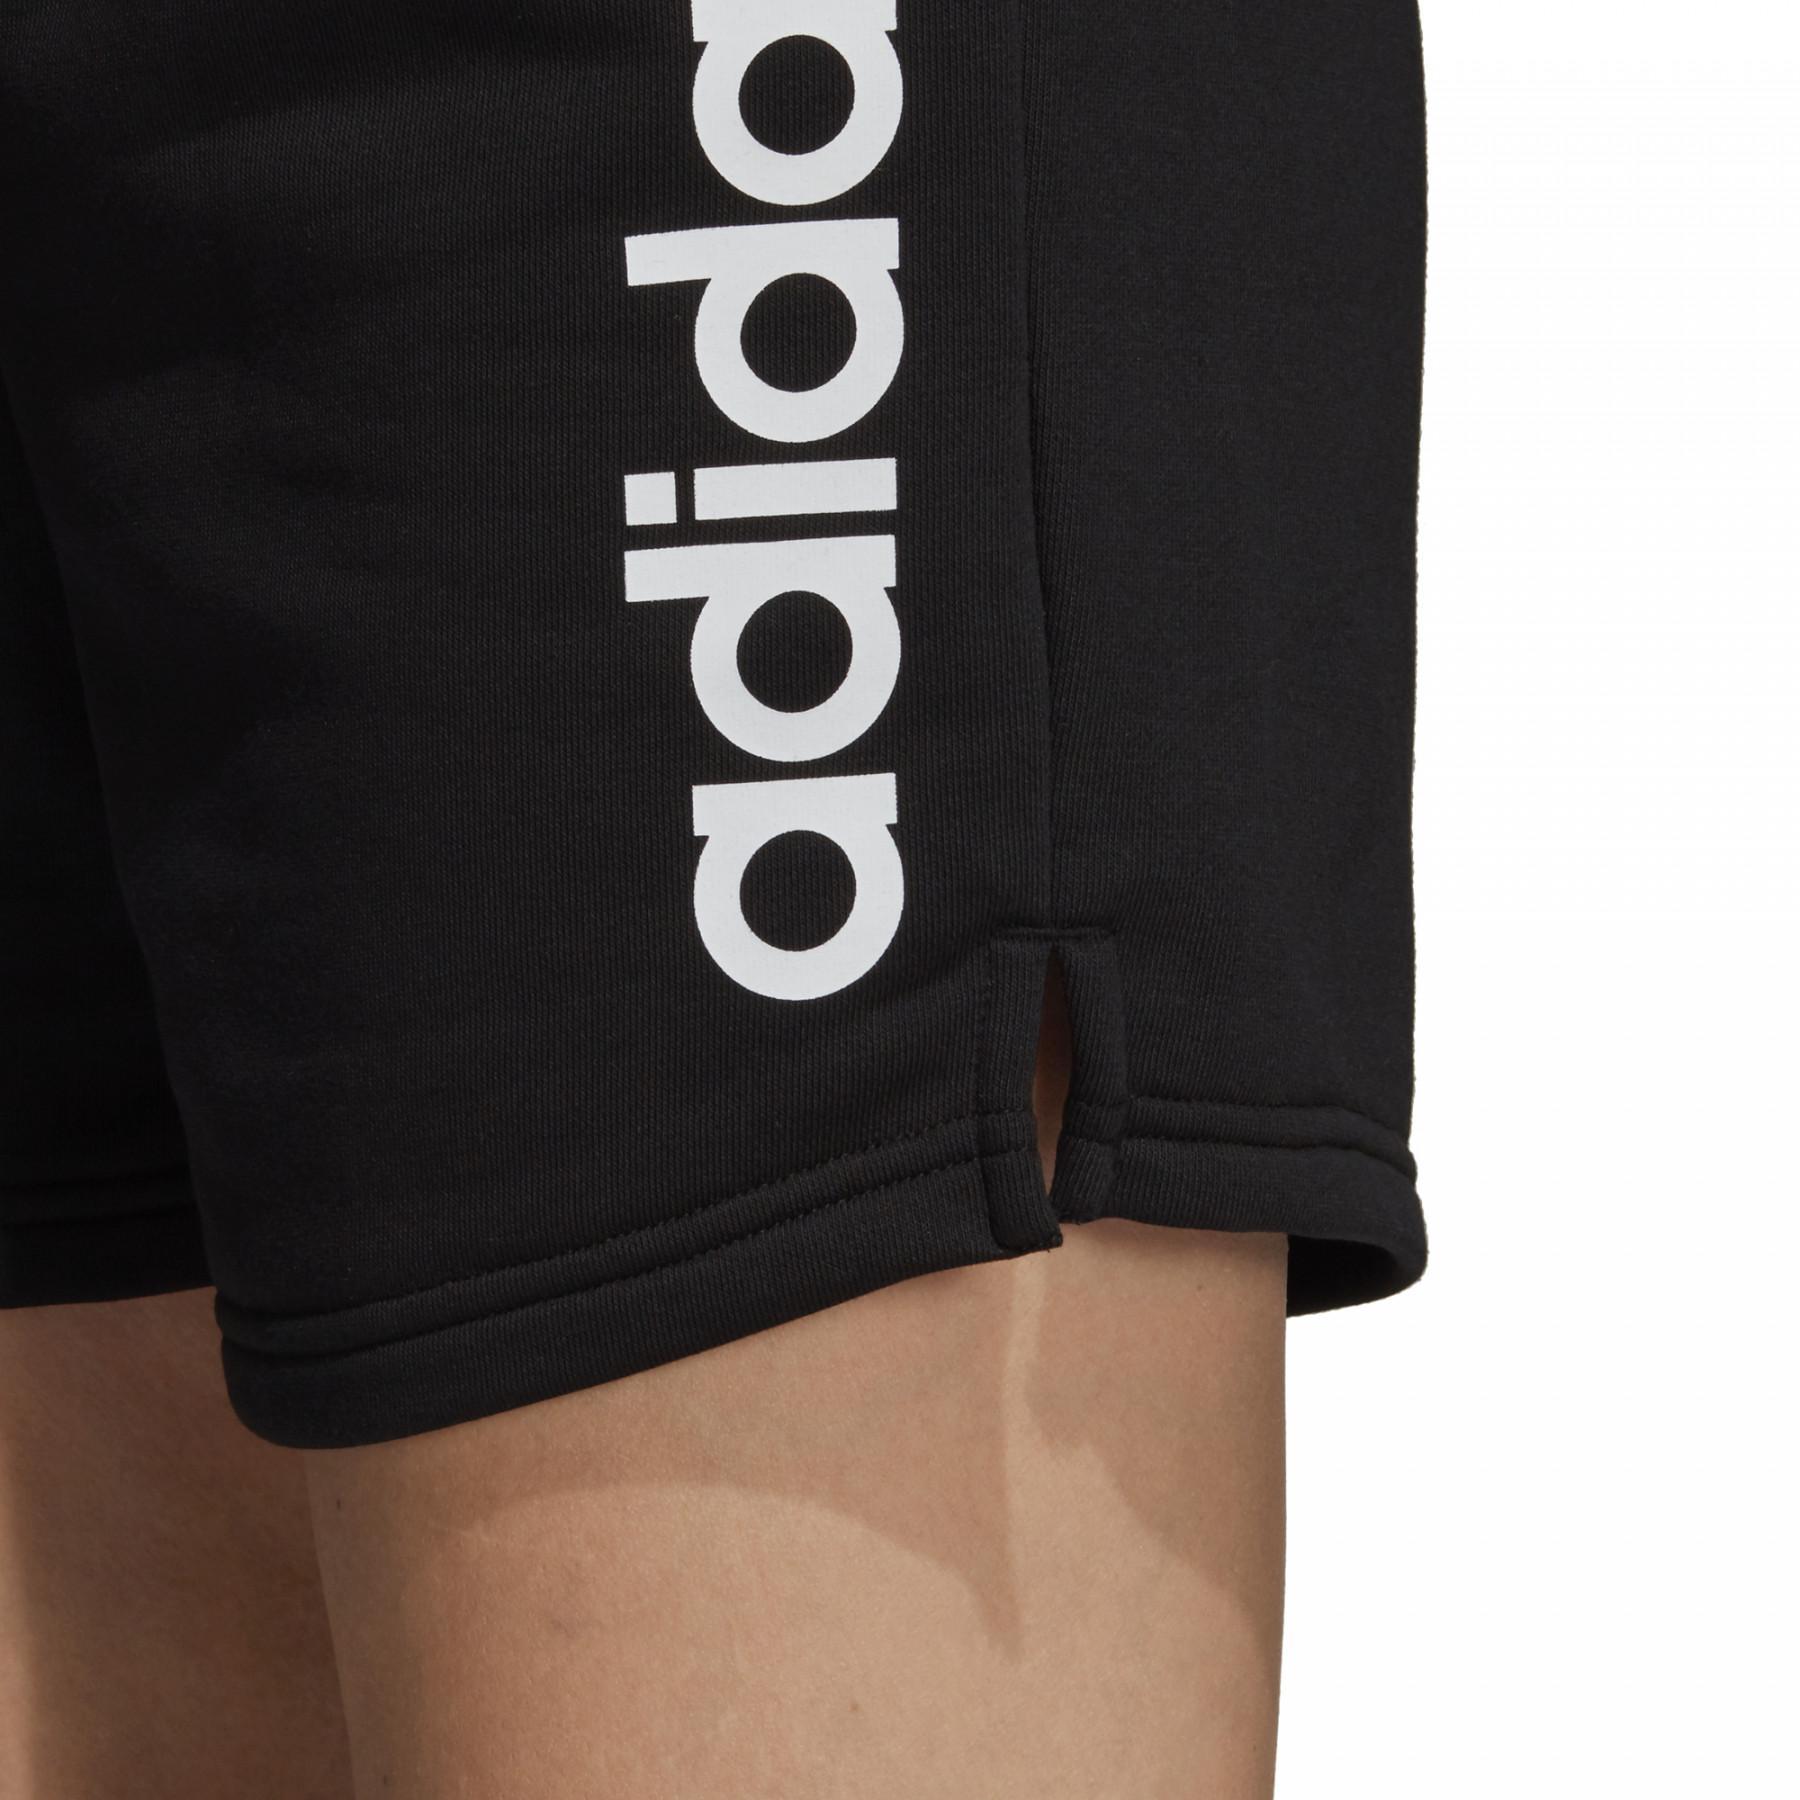 Damen-Shorts adidas Essentials Linear Logo